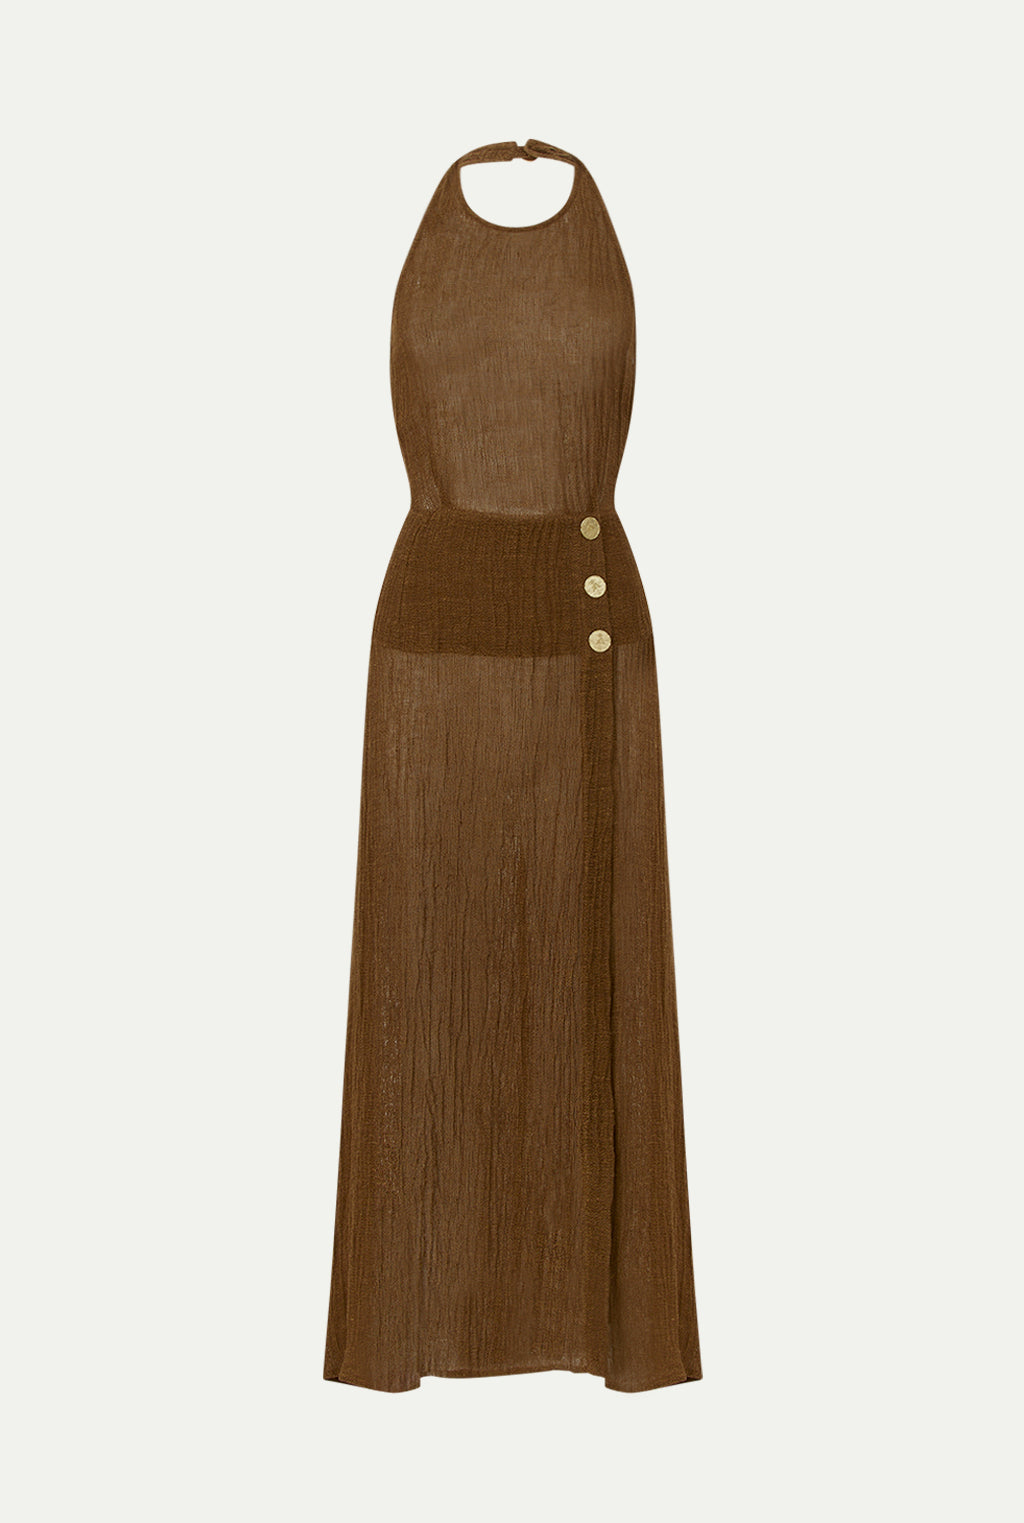 DAIRUT linen dress